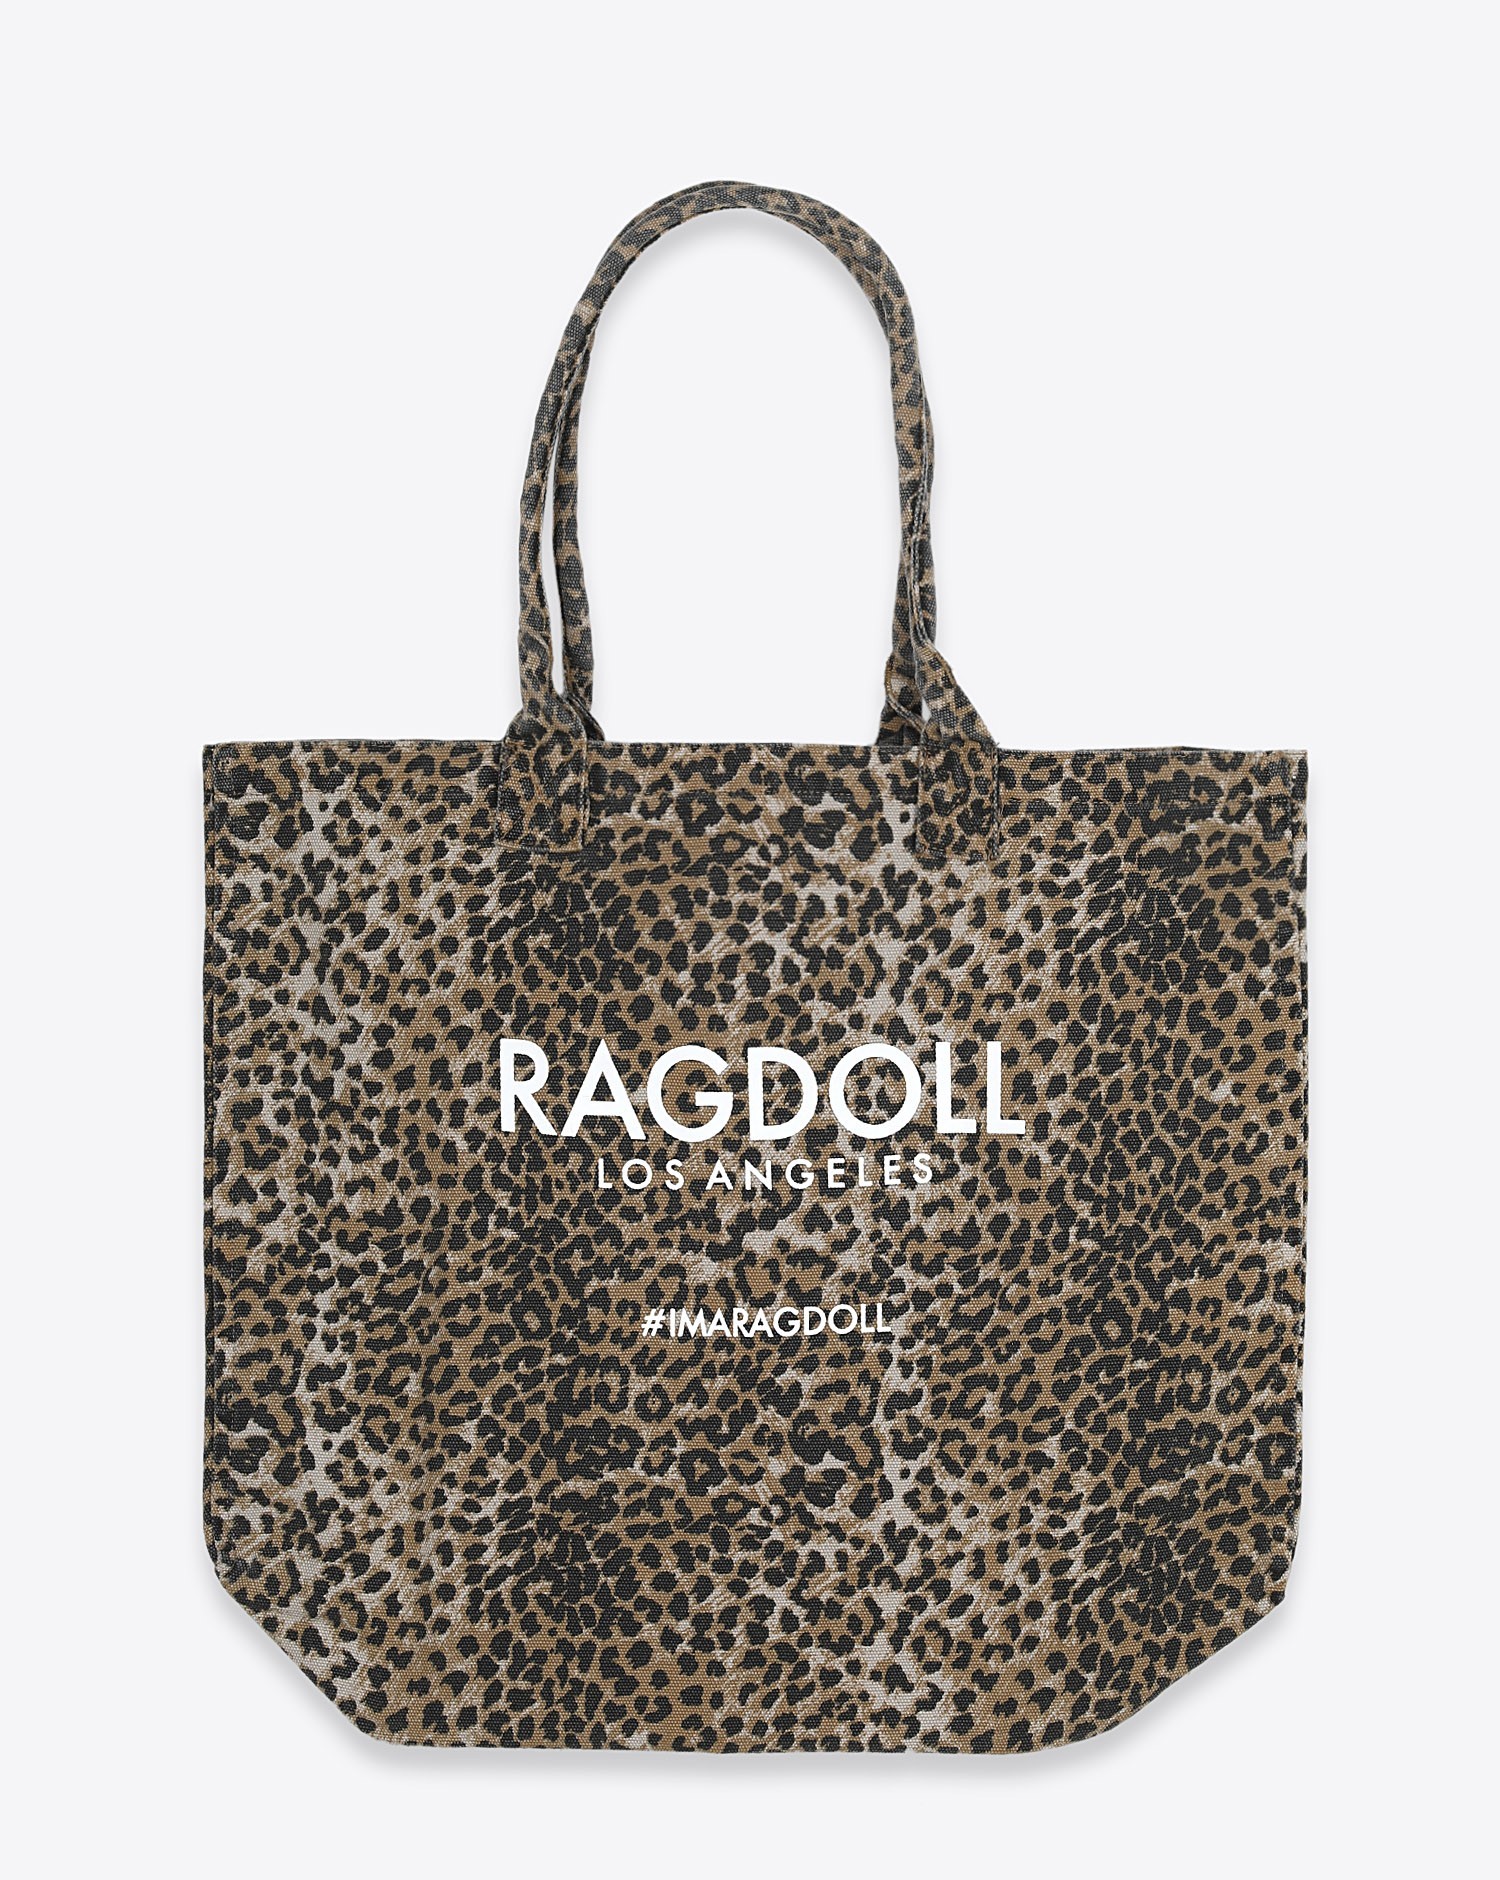 Sac en toile imprimé léopard holiday bag Ragdoll LA 